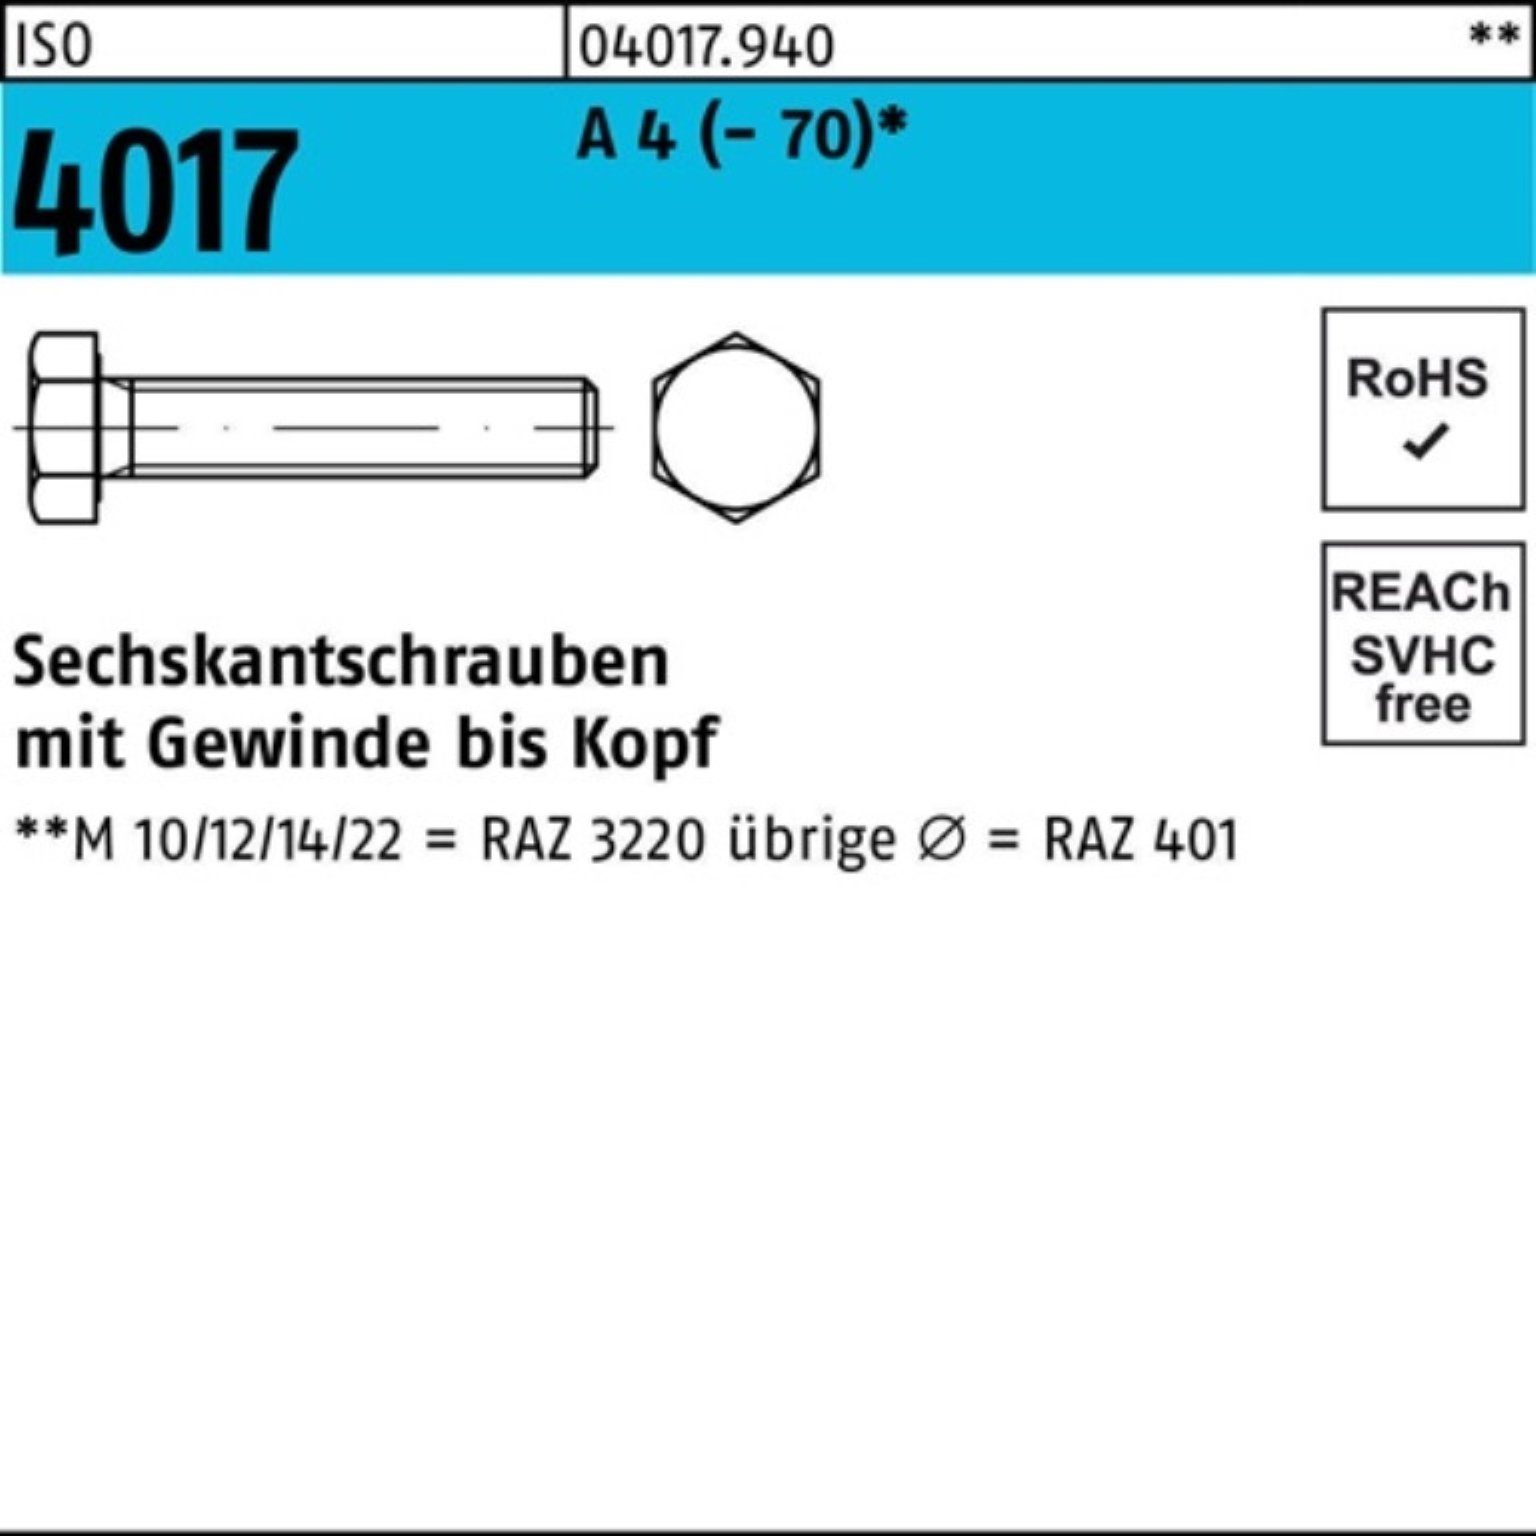 Bufab Sechskantschraube 100er Pack Sechskantschraube ISO 4017 VG M10x 130 A 4 (70) 1 Stück